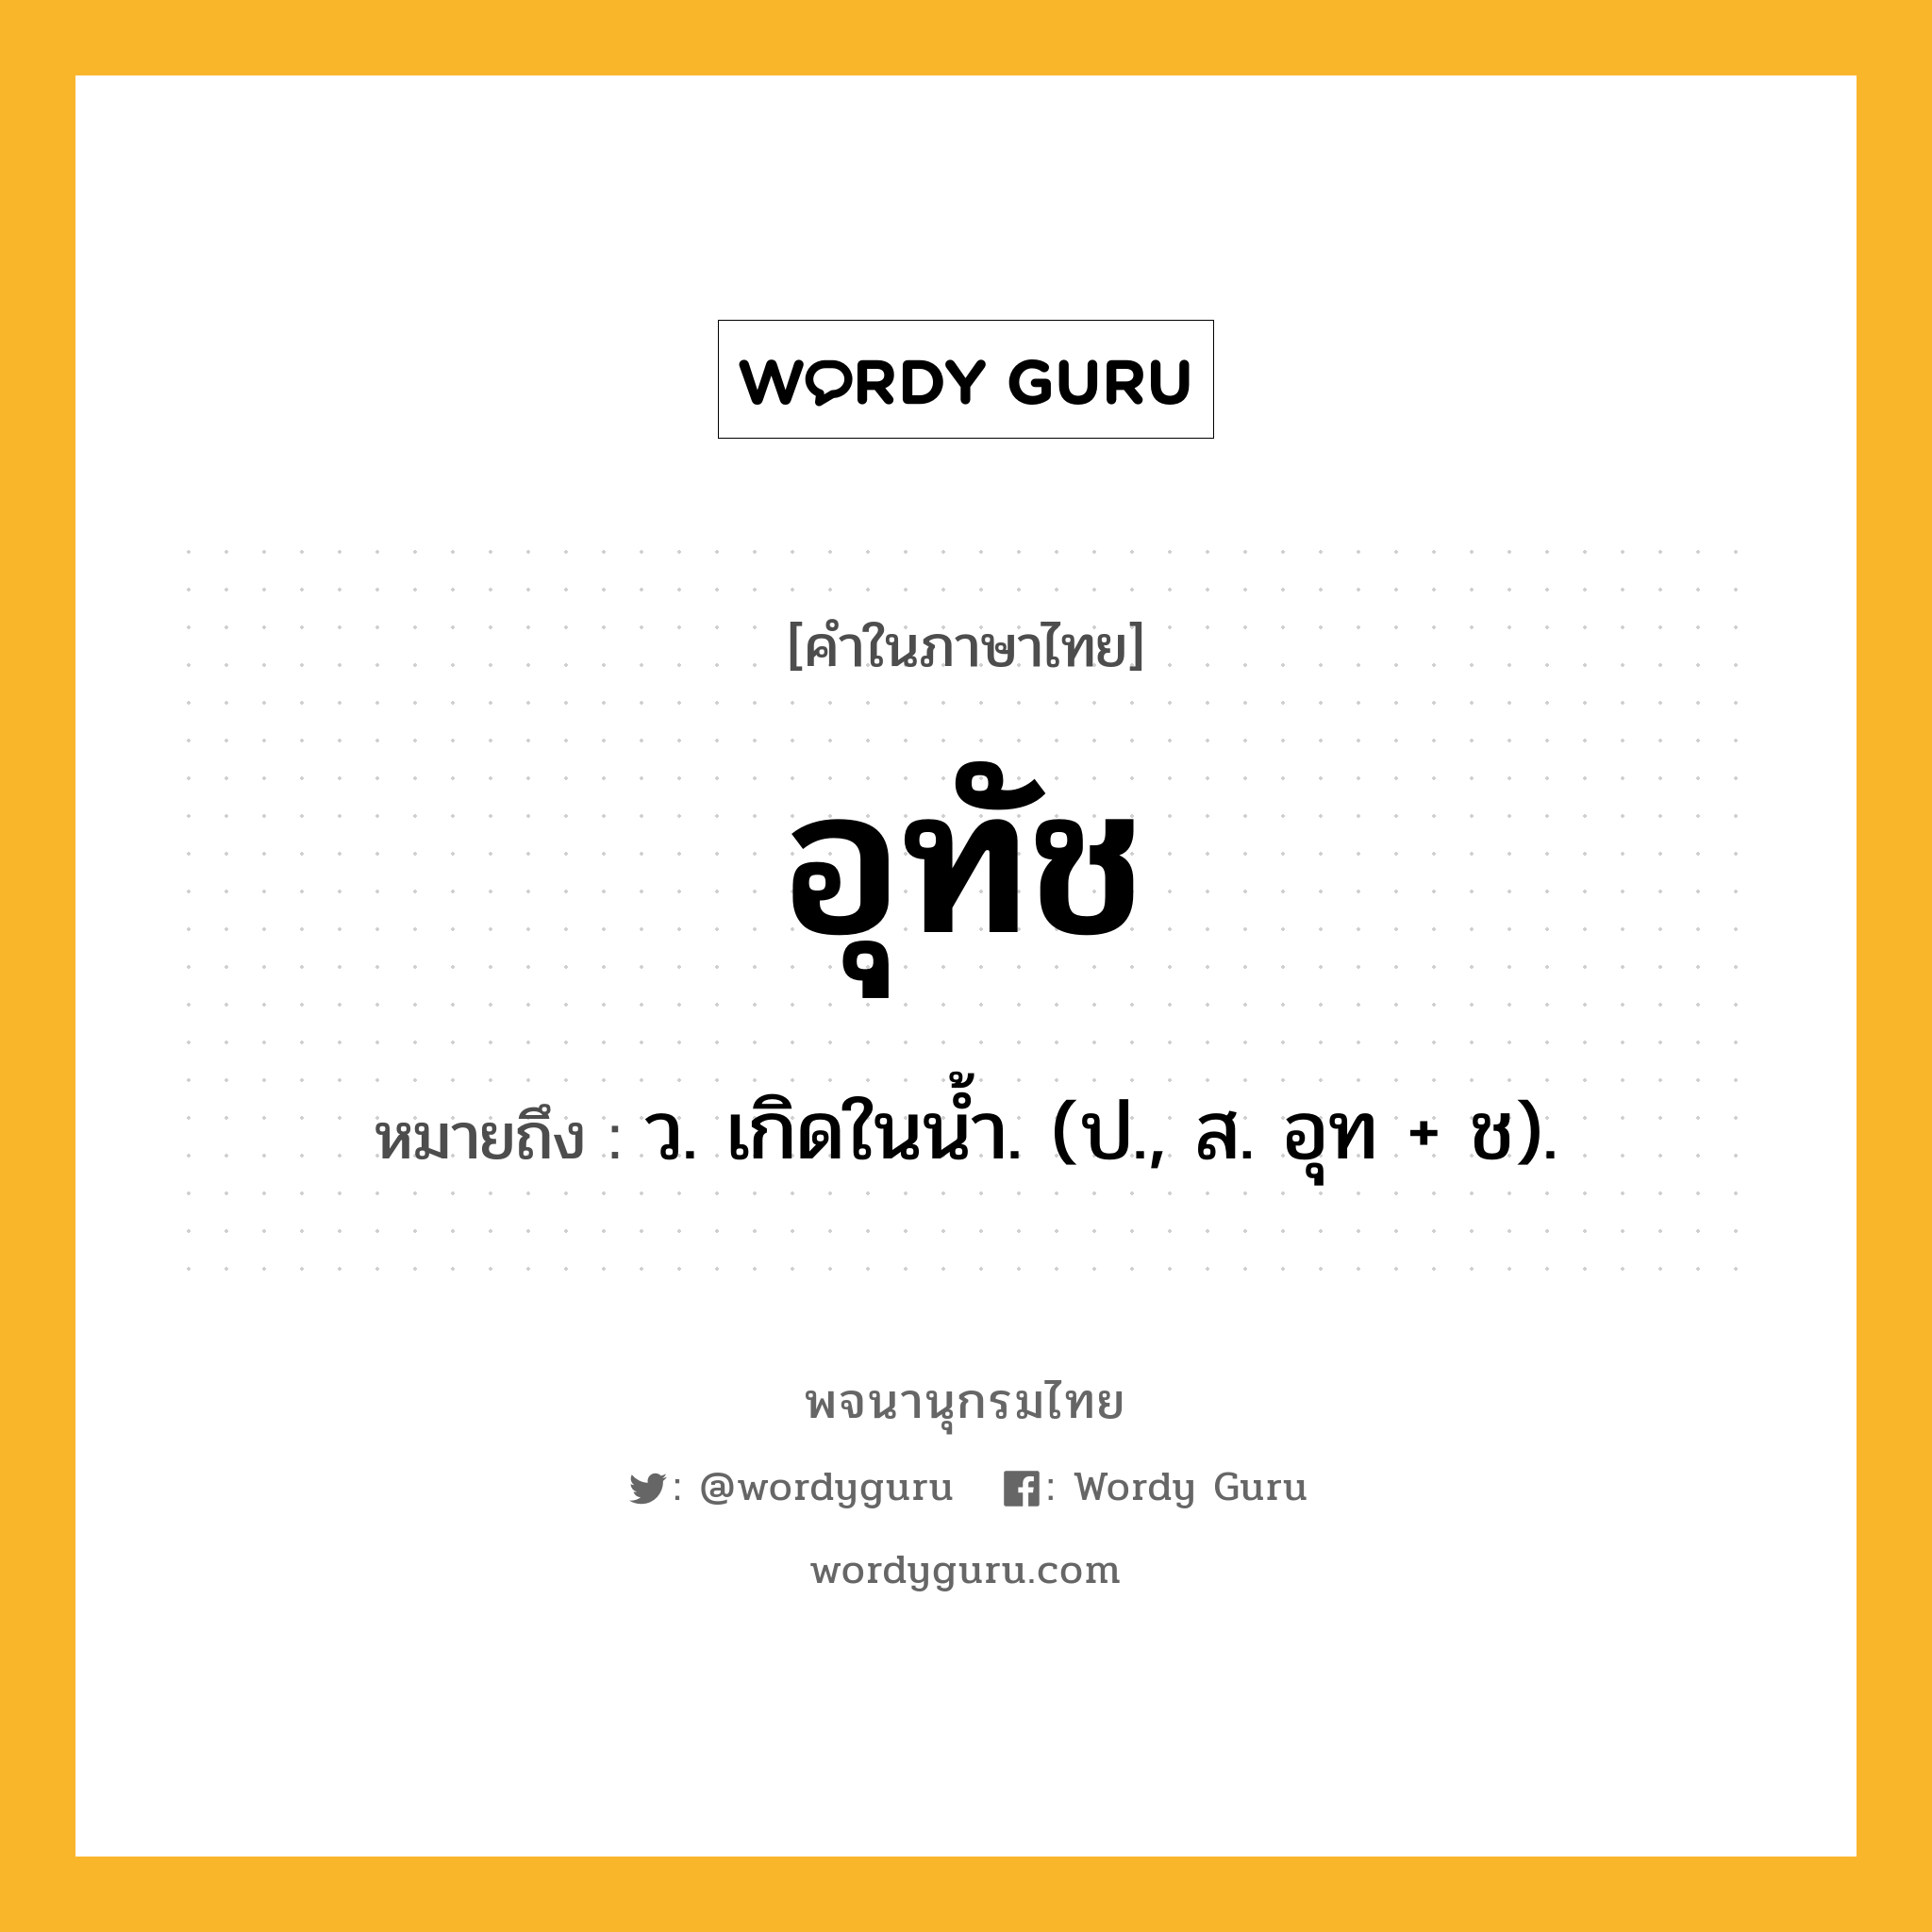 อุทัช ความหมาย หมายถึงอะไร?, คำในภาษาไทย อุทัช หมายถึง ว. เกิดในนํ้า. (ป., ส. อุท + ช).